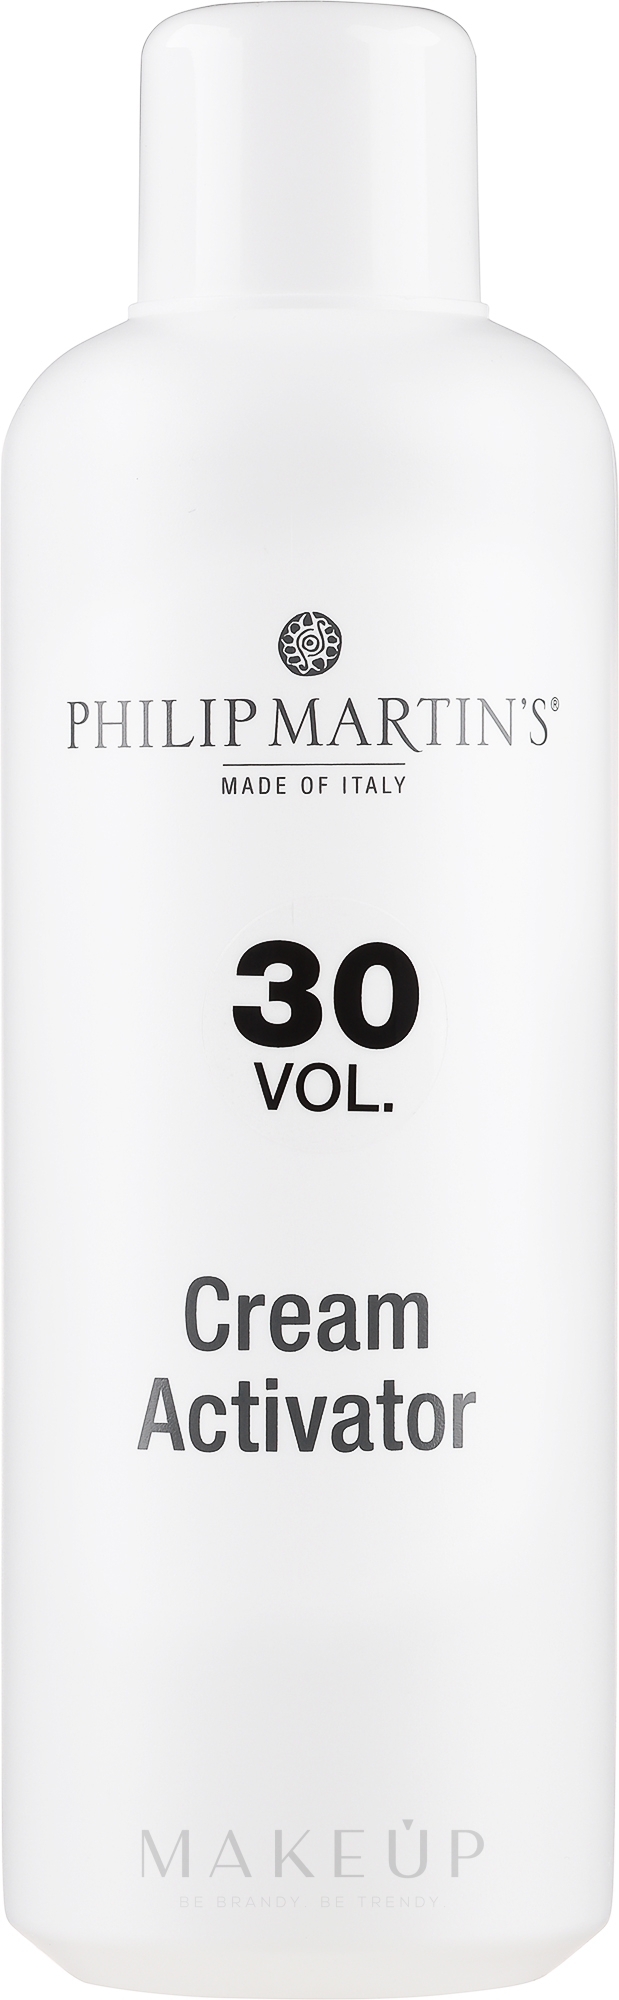 Creme-Aktivator 9% Ammoniakfrei - Philip Martin's Cream Aktivator Vol. 30 — Bild 1000 ml